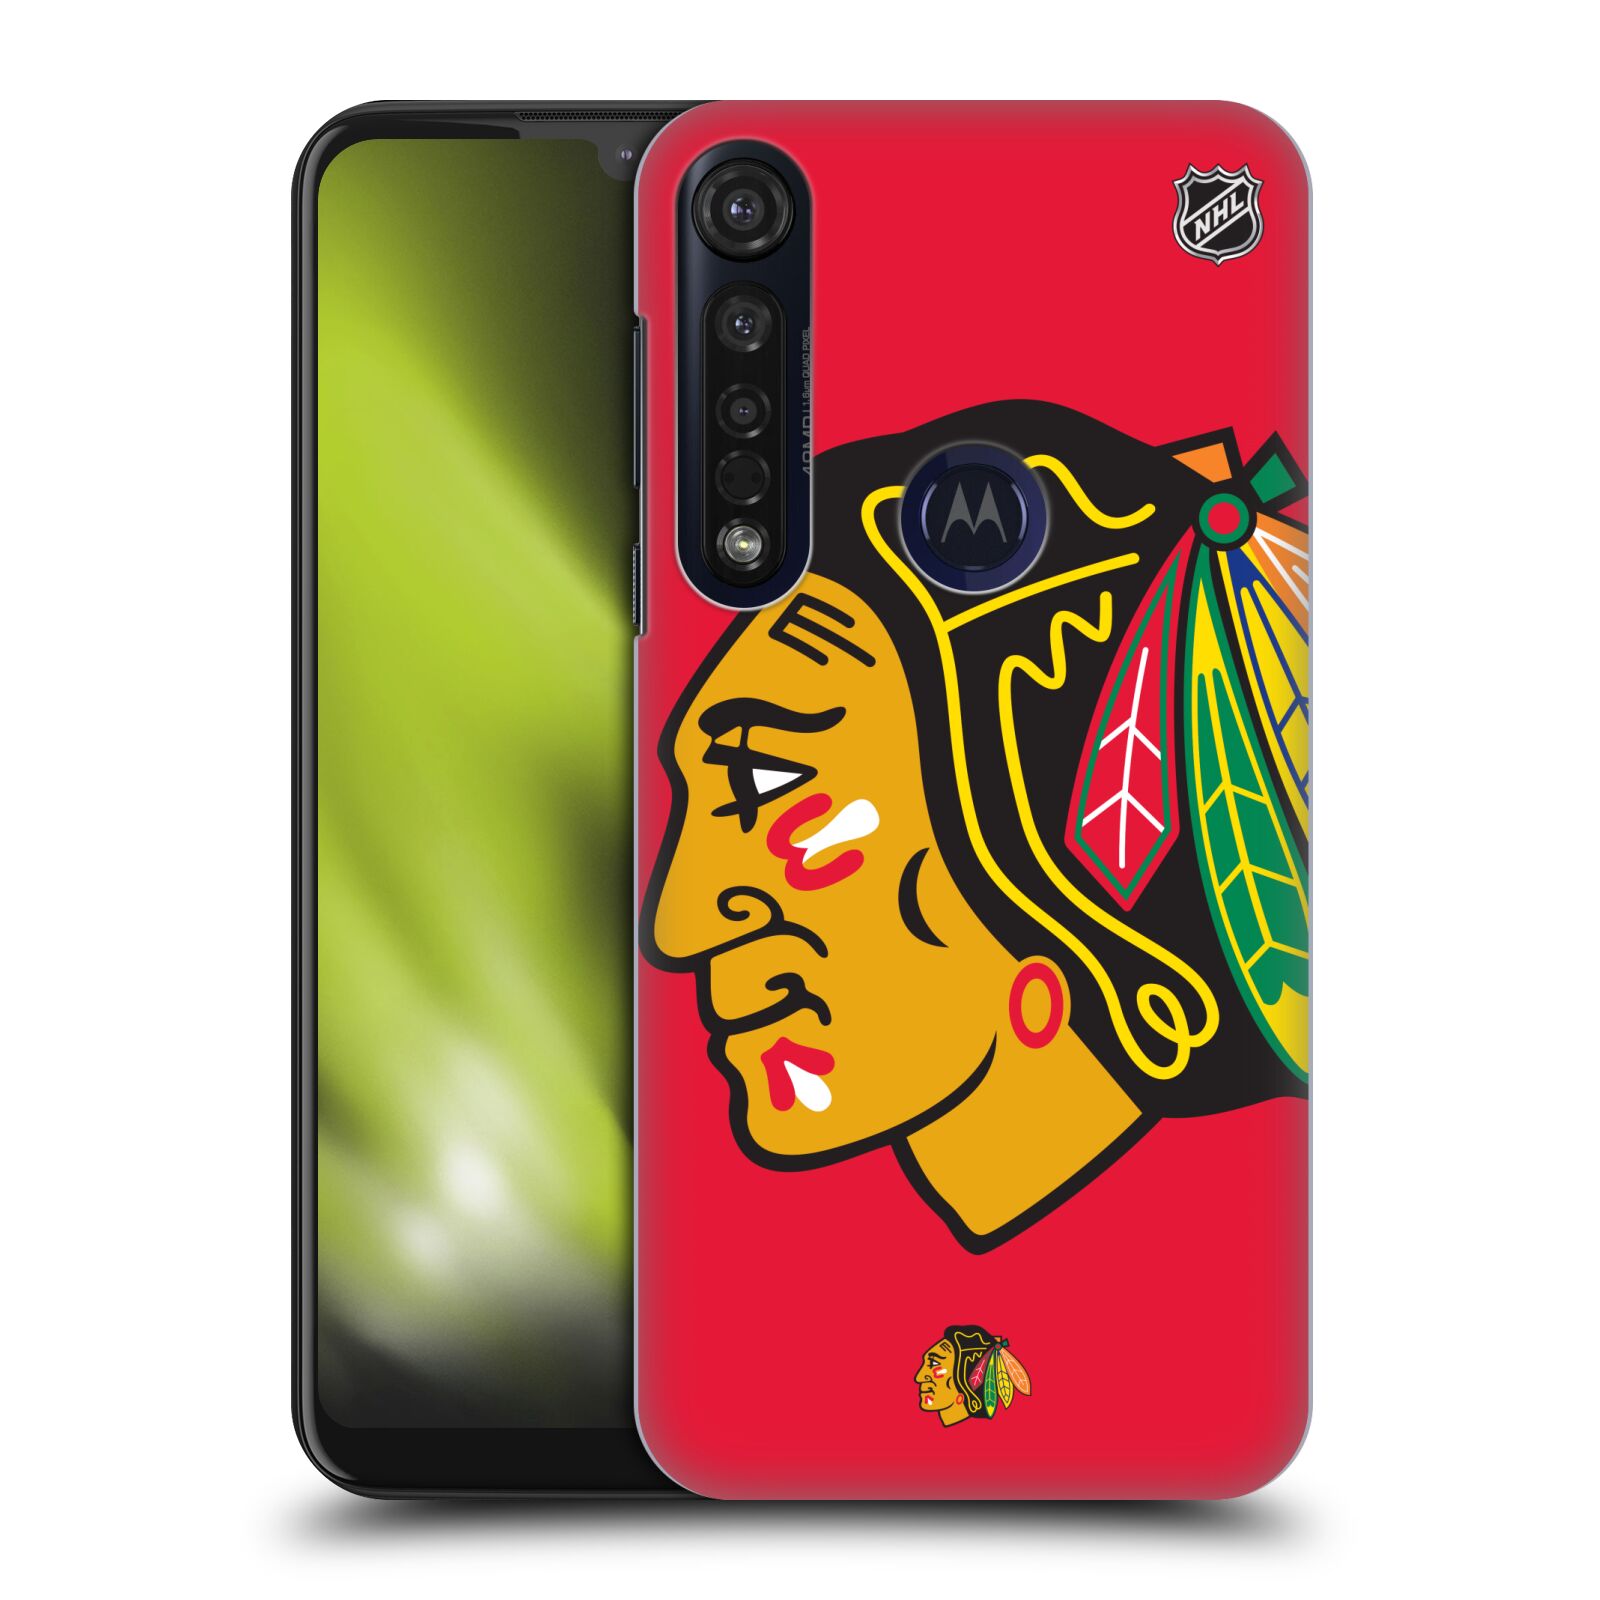 Pouzdro na mobil Motorola Moto G8 PLUS - HEAD CASE - Hokej NHL - Chicago Blackhawks - Velký znak